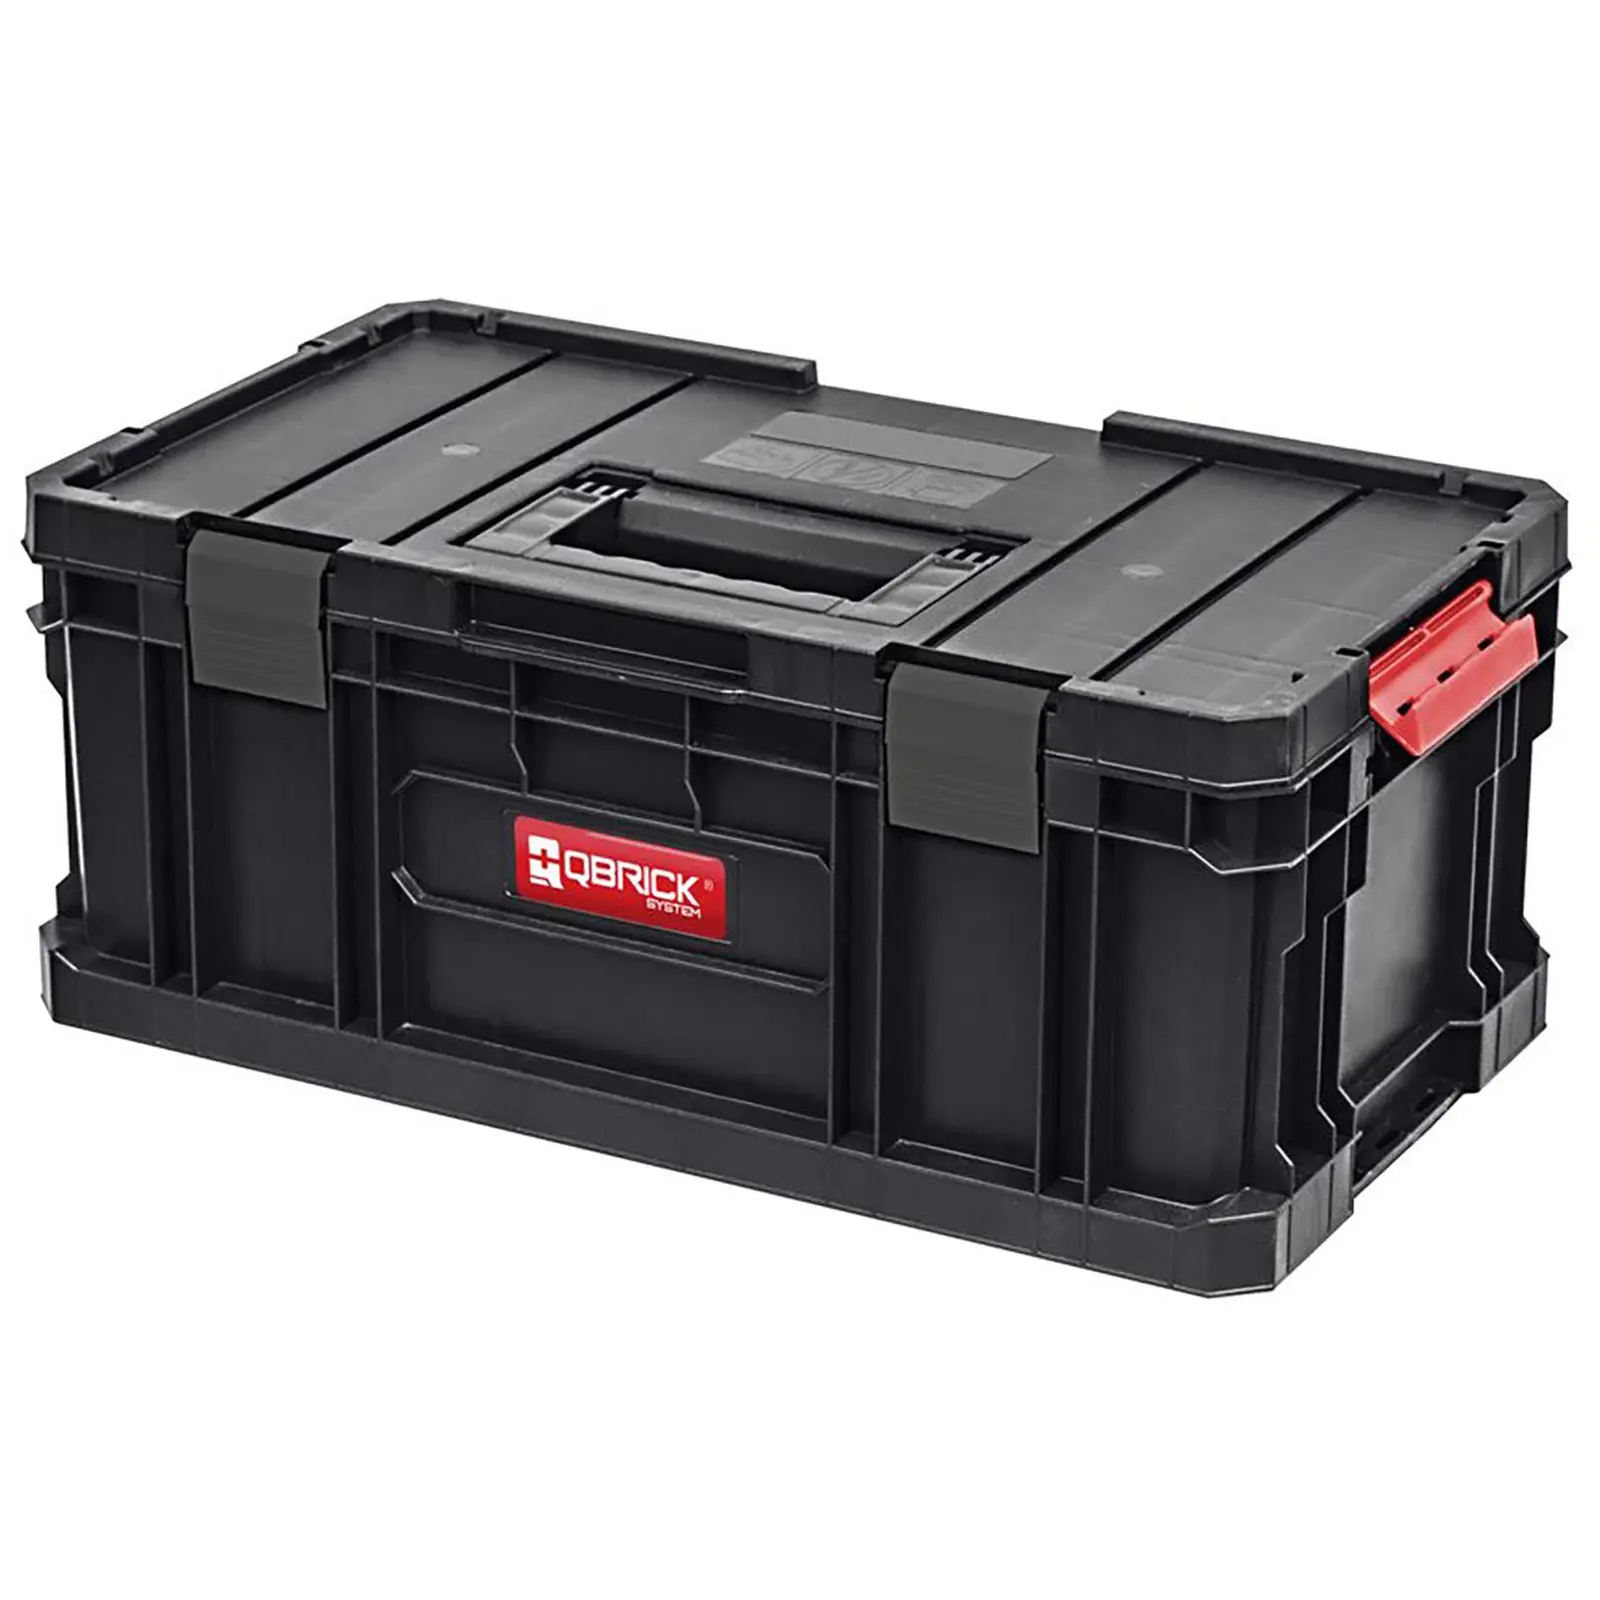 Værktøjskasse på hjul – sæt inkl. 2 værktøjskasser og skruekasse